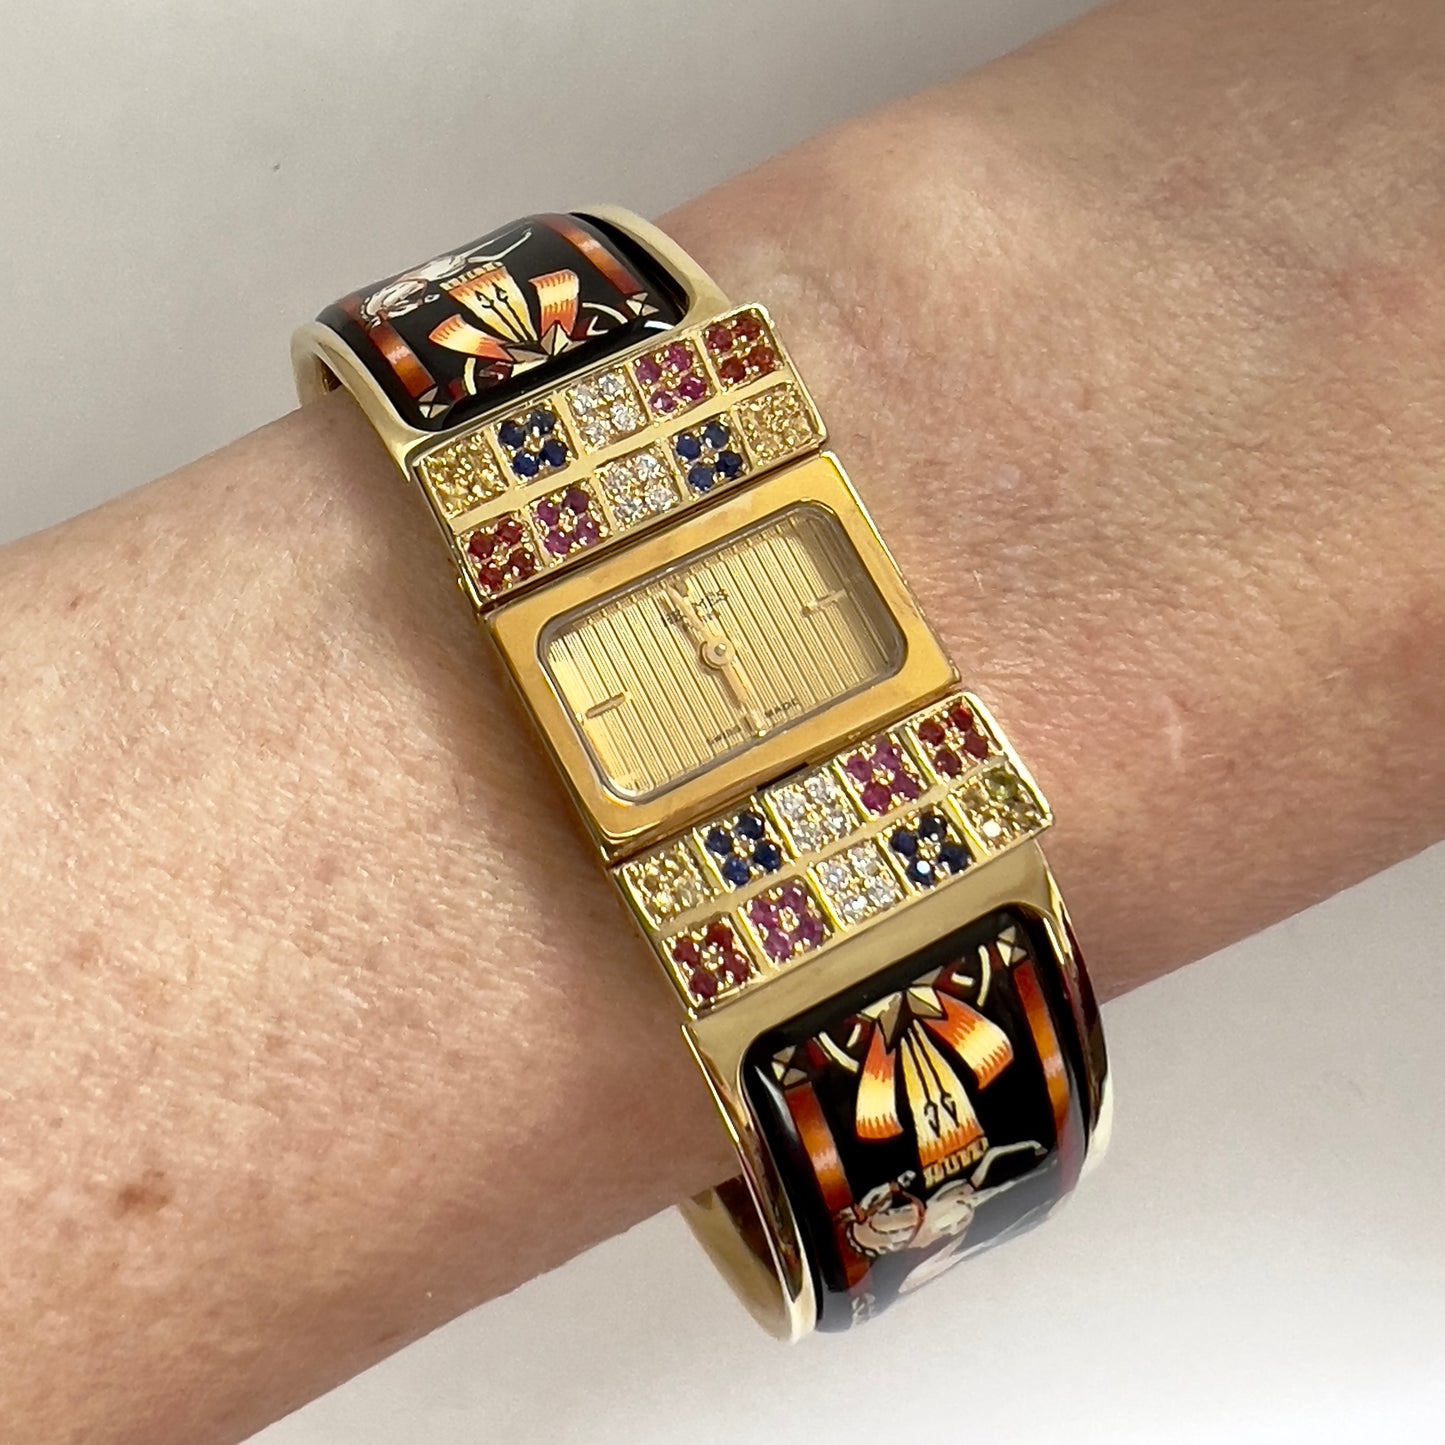 HERMÈS LOQUET 18K Gold-Plated Bracelet Watch w/ Multi-Color SAPPHIRES & DIAMONDS